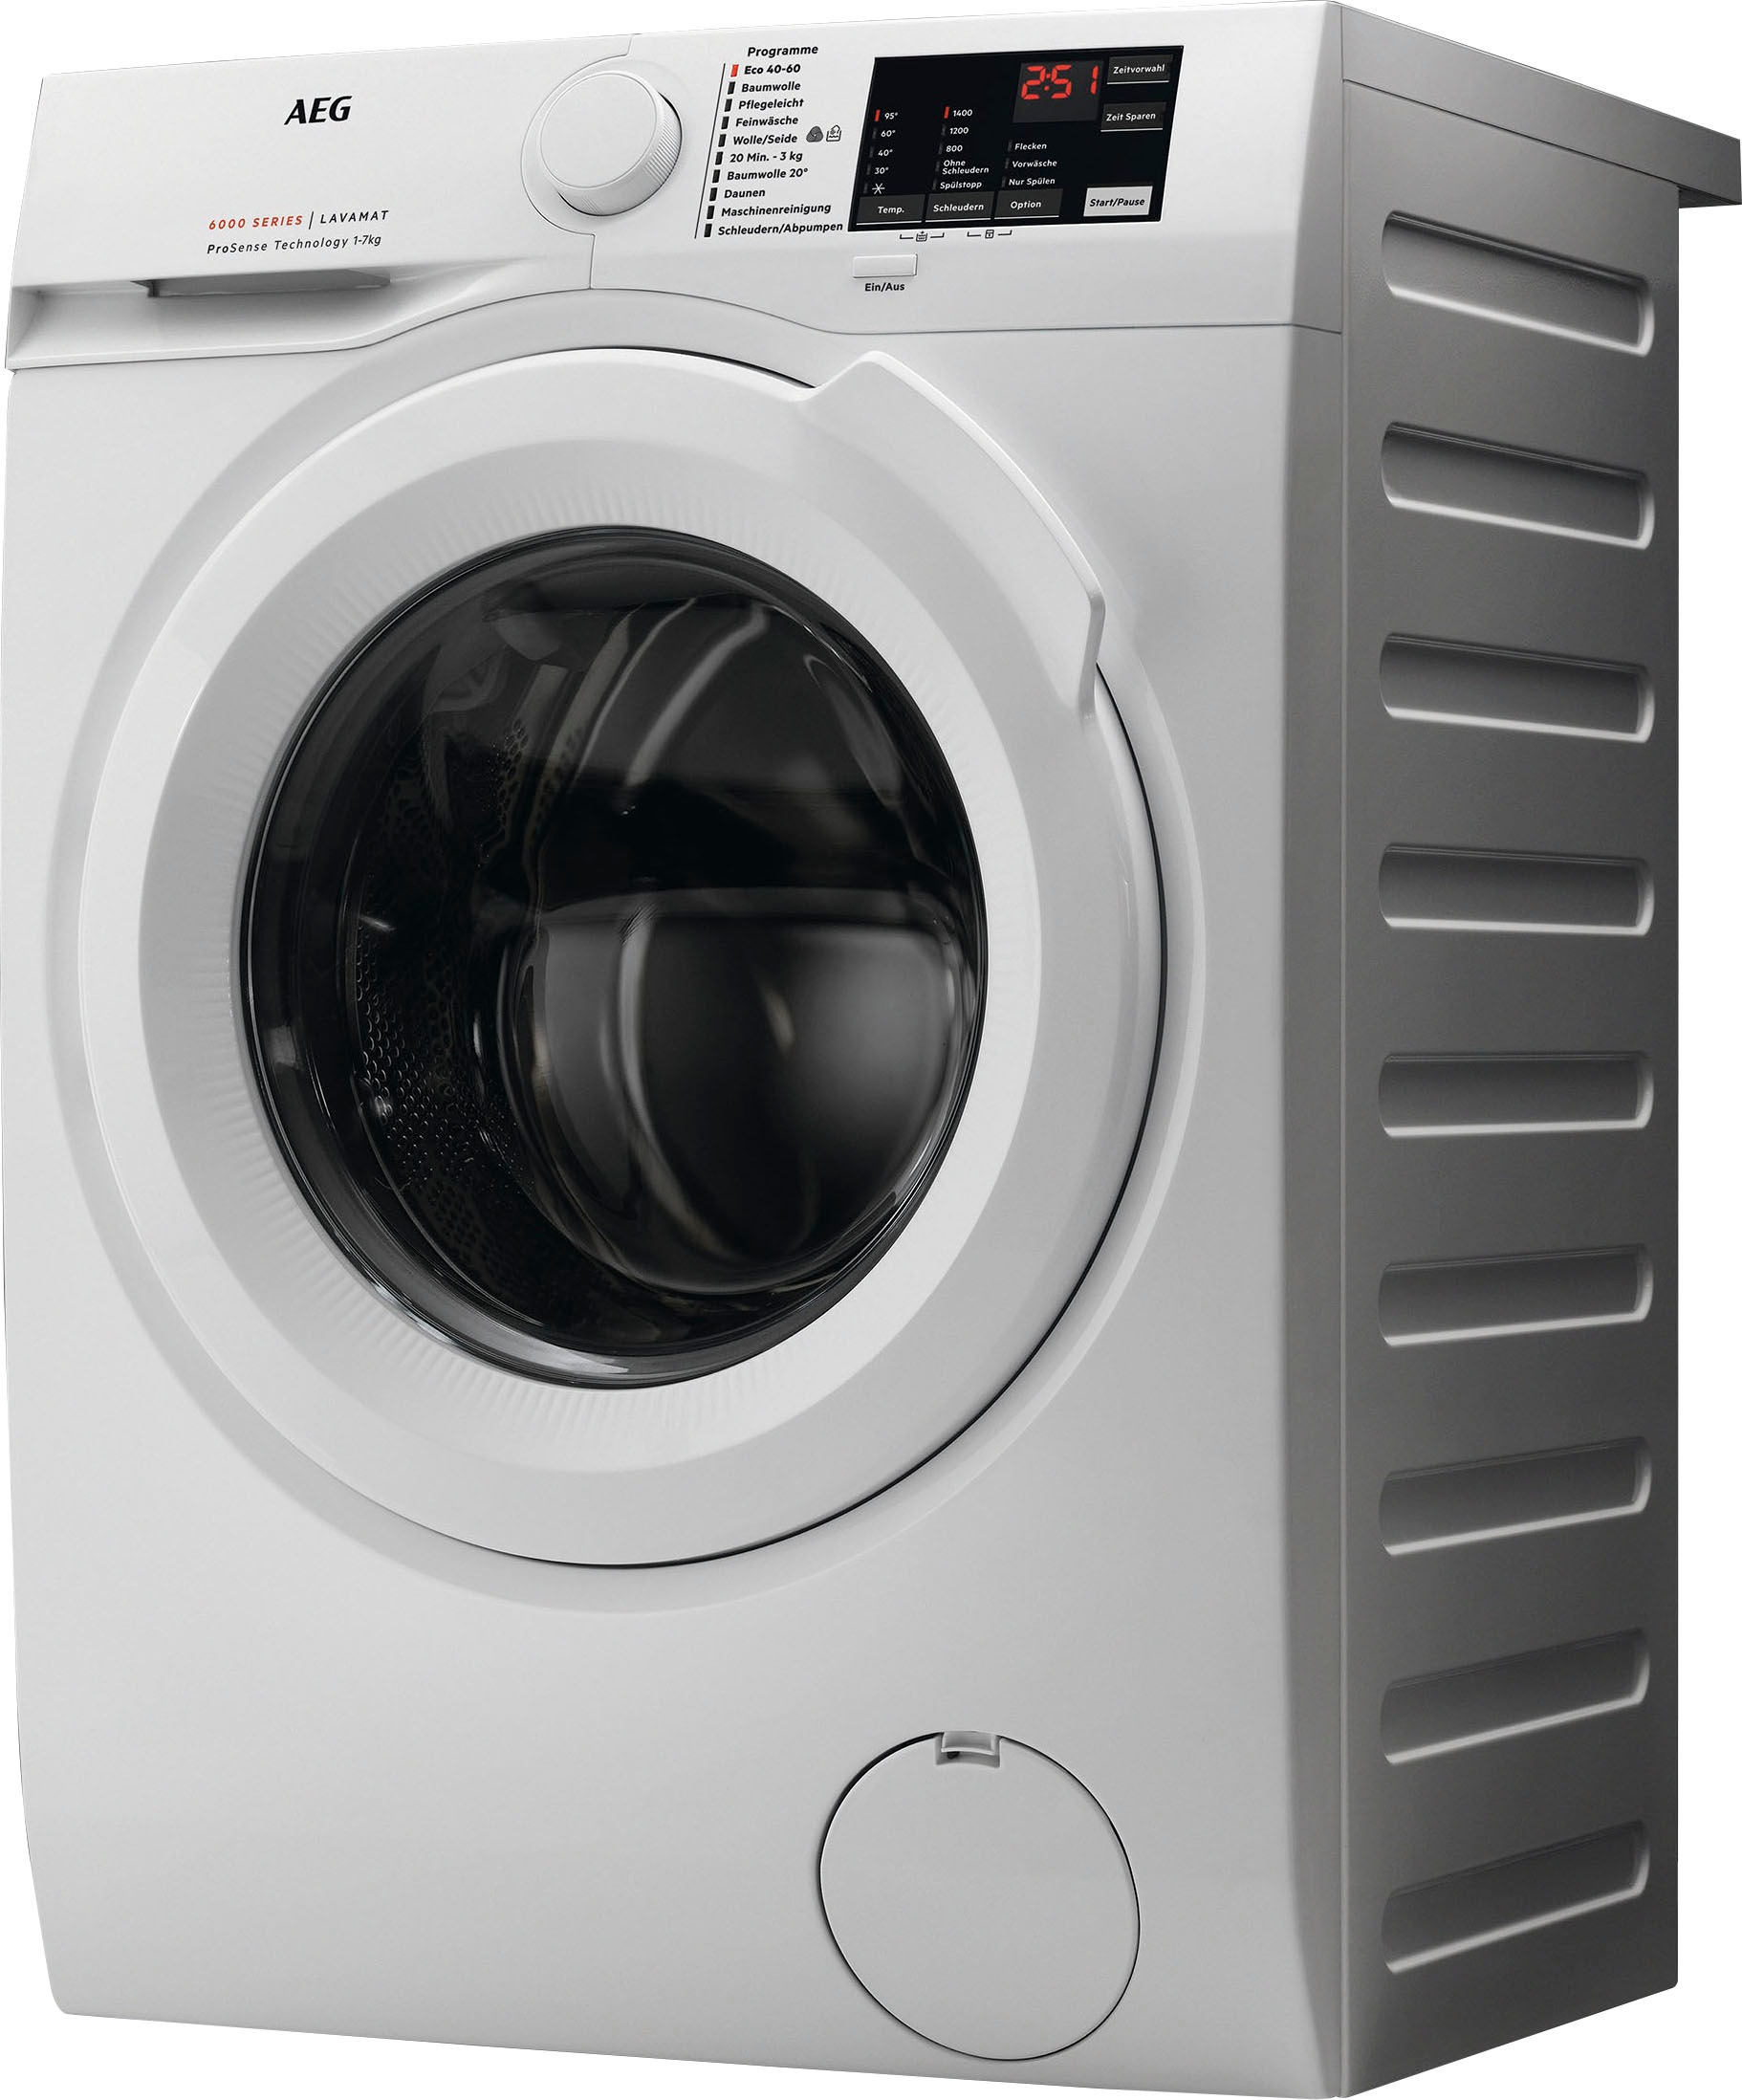 mit Anti-Allergie Waschmaschine, U/min, 9 AEG 1400 kg, L6FBA50490, XXL 3 Hygiene-/ Programm mit Dampf Garantie Jahren